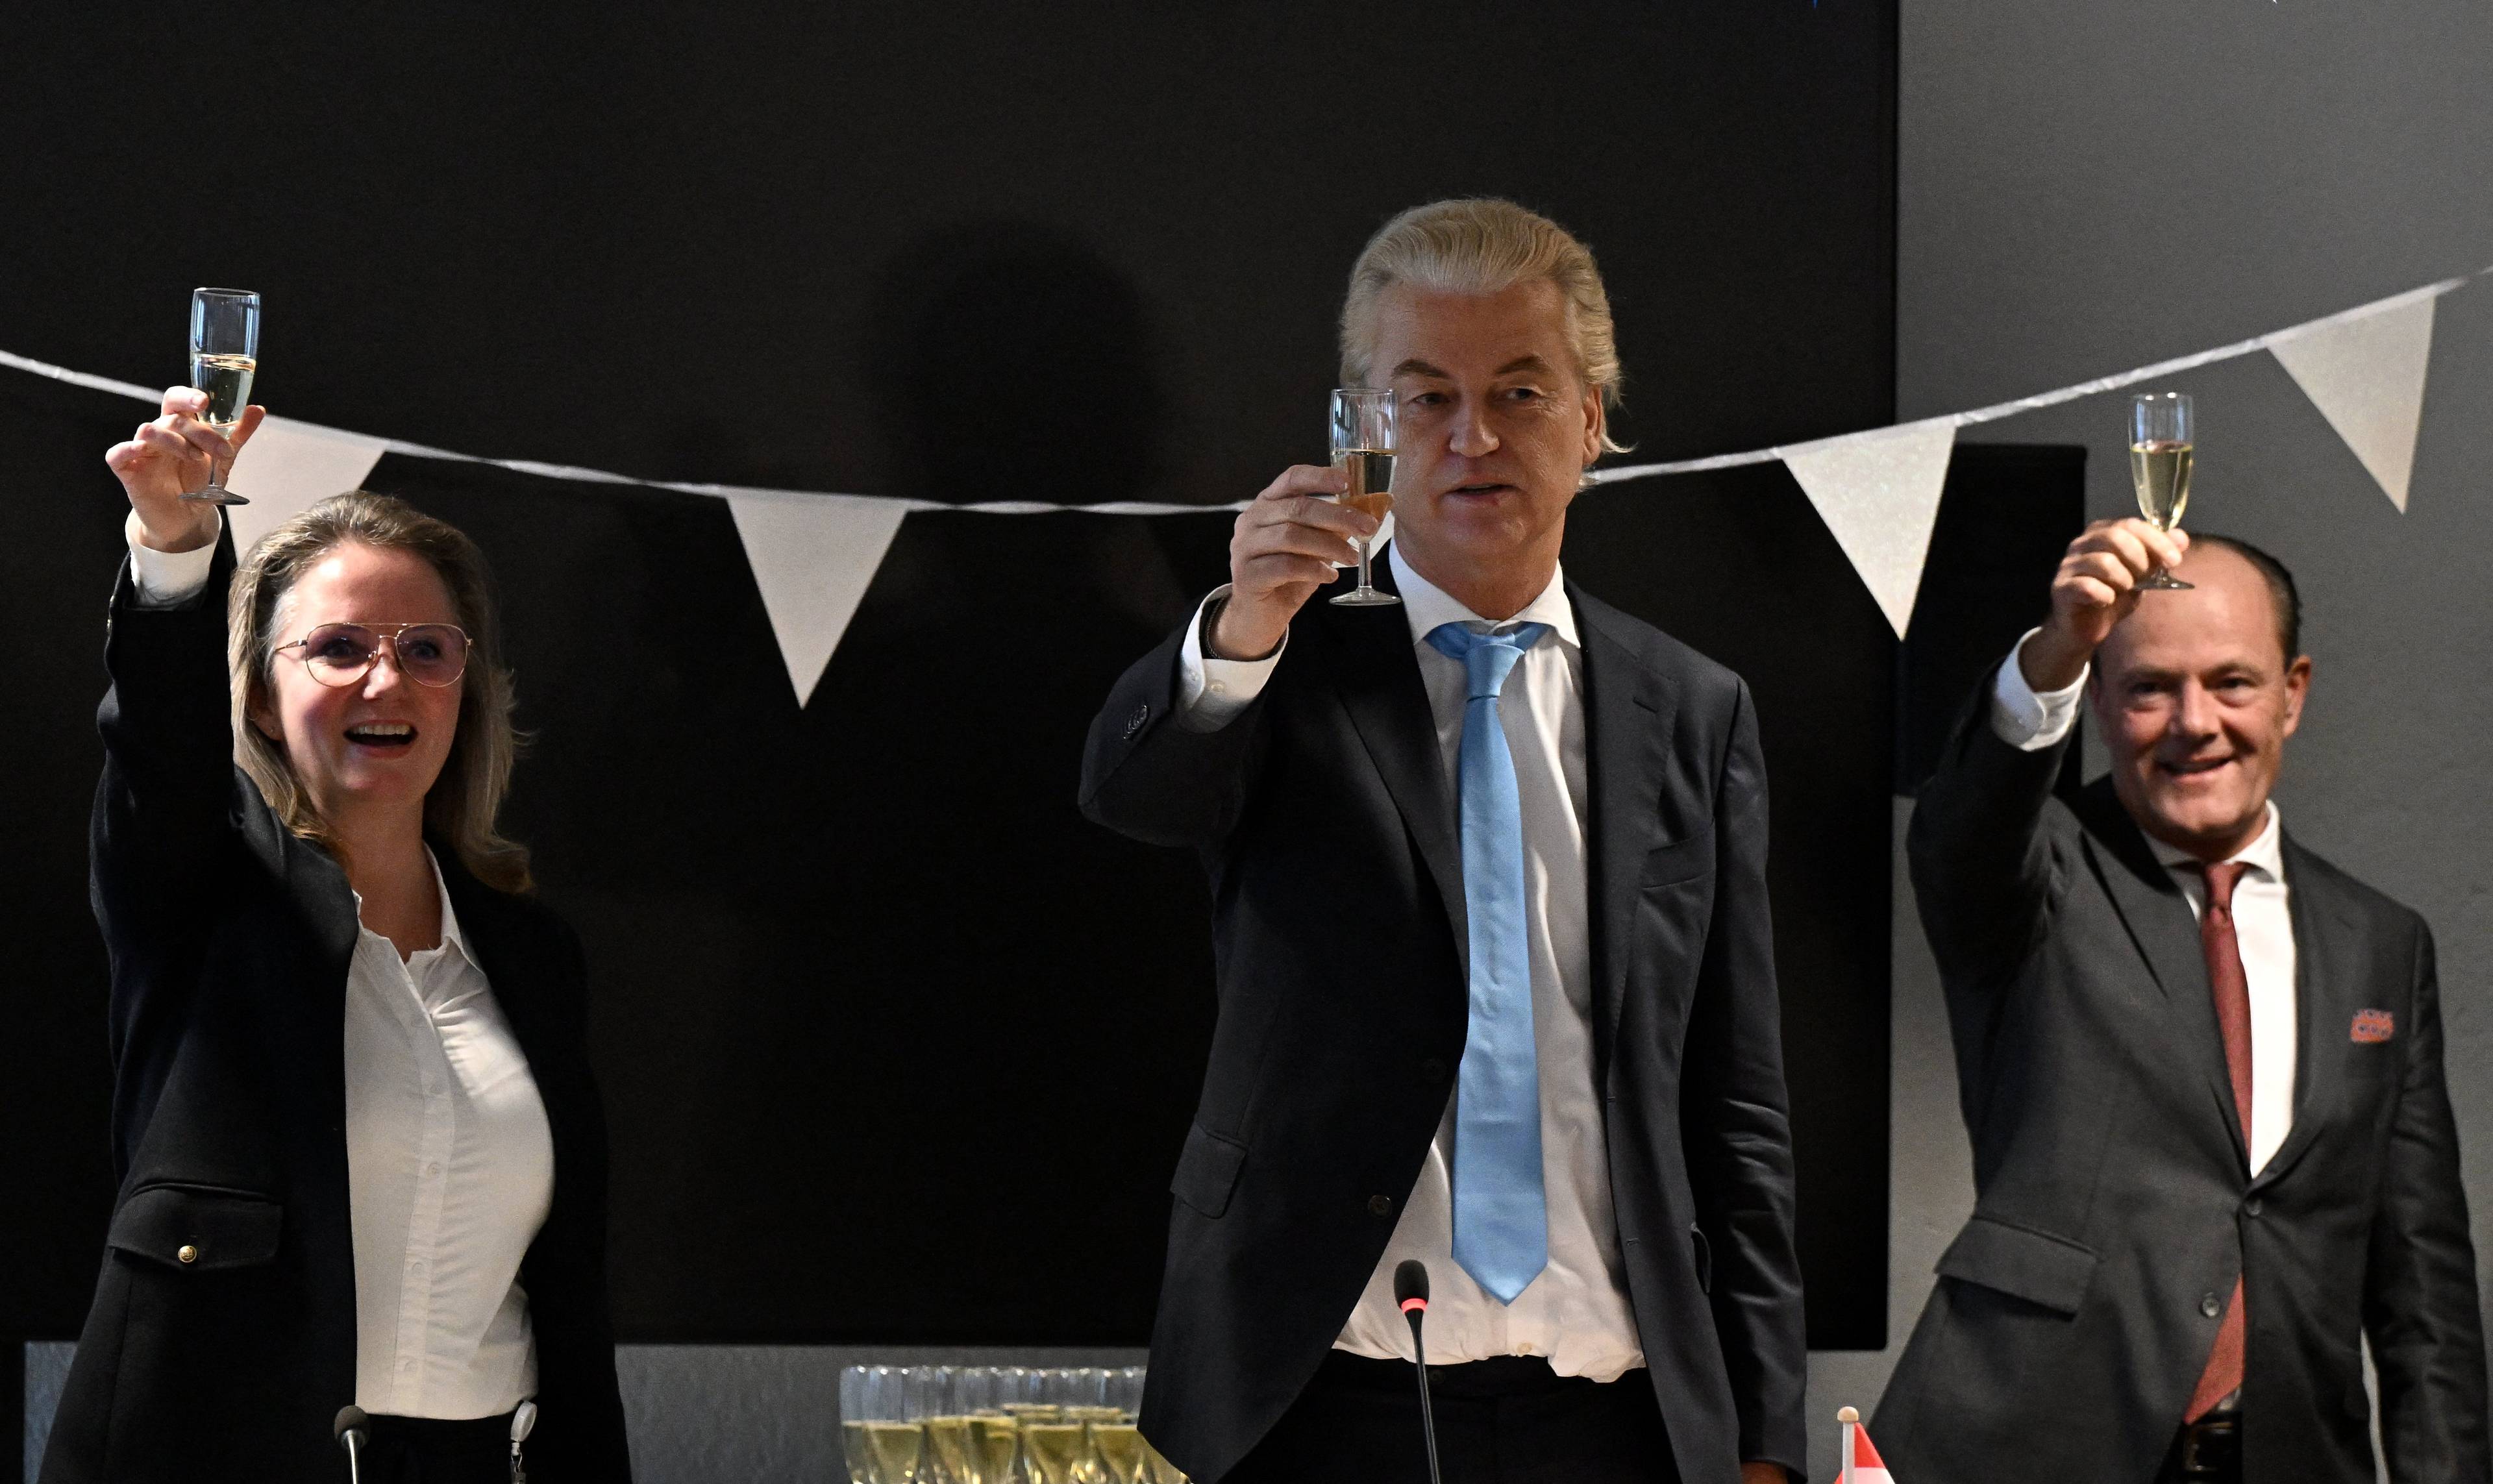 Mężczyzna w jasnych, długich włosach zaczesanych do tyłu wznosi kieliszek w geście toastu - to lider holenderskiej skrajnej prawicy Geert Wilders